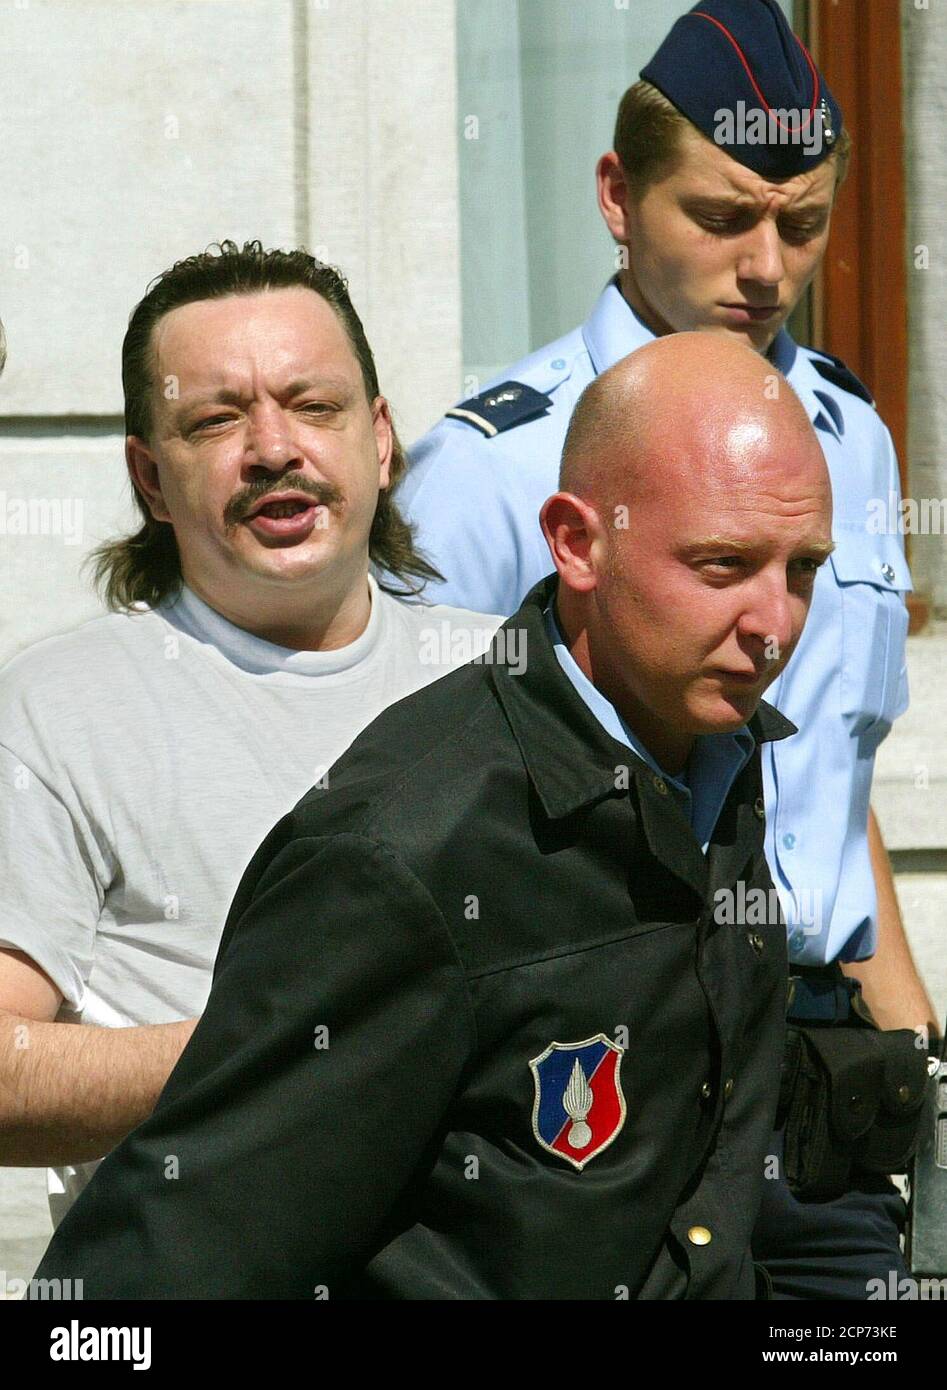 El belga Pascal Teise (R), acusado de pedofilia, está rodeado por agentes  de policía cuando sale de la casa de justicia de NeufChateau en el sur de  Bélgica el 2 de septiembre